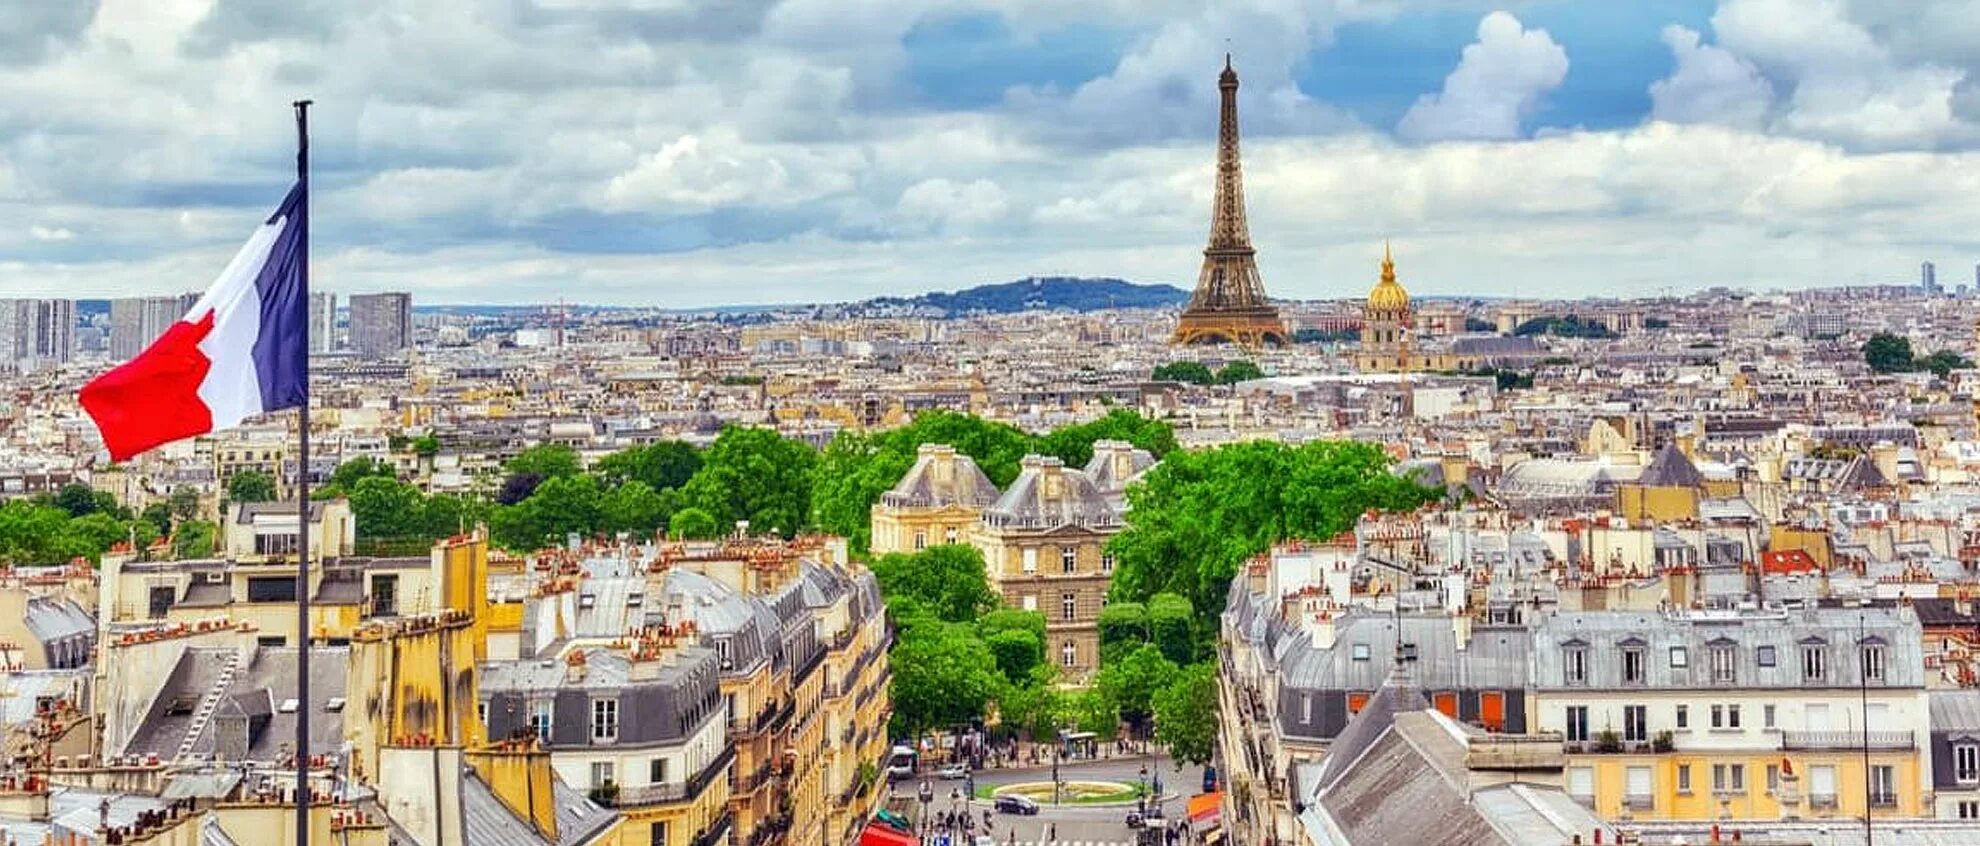 Эльфиева башня с флагом Франции. Флаг Парижа. Флаг Парижа Франции. Флаг Франции фото.